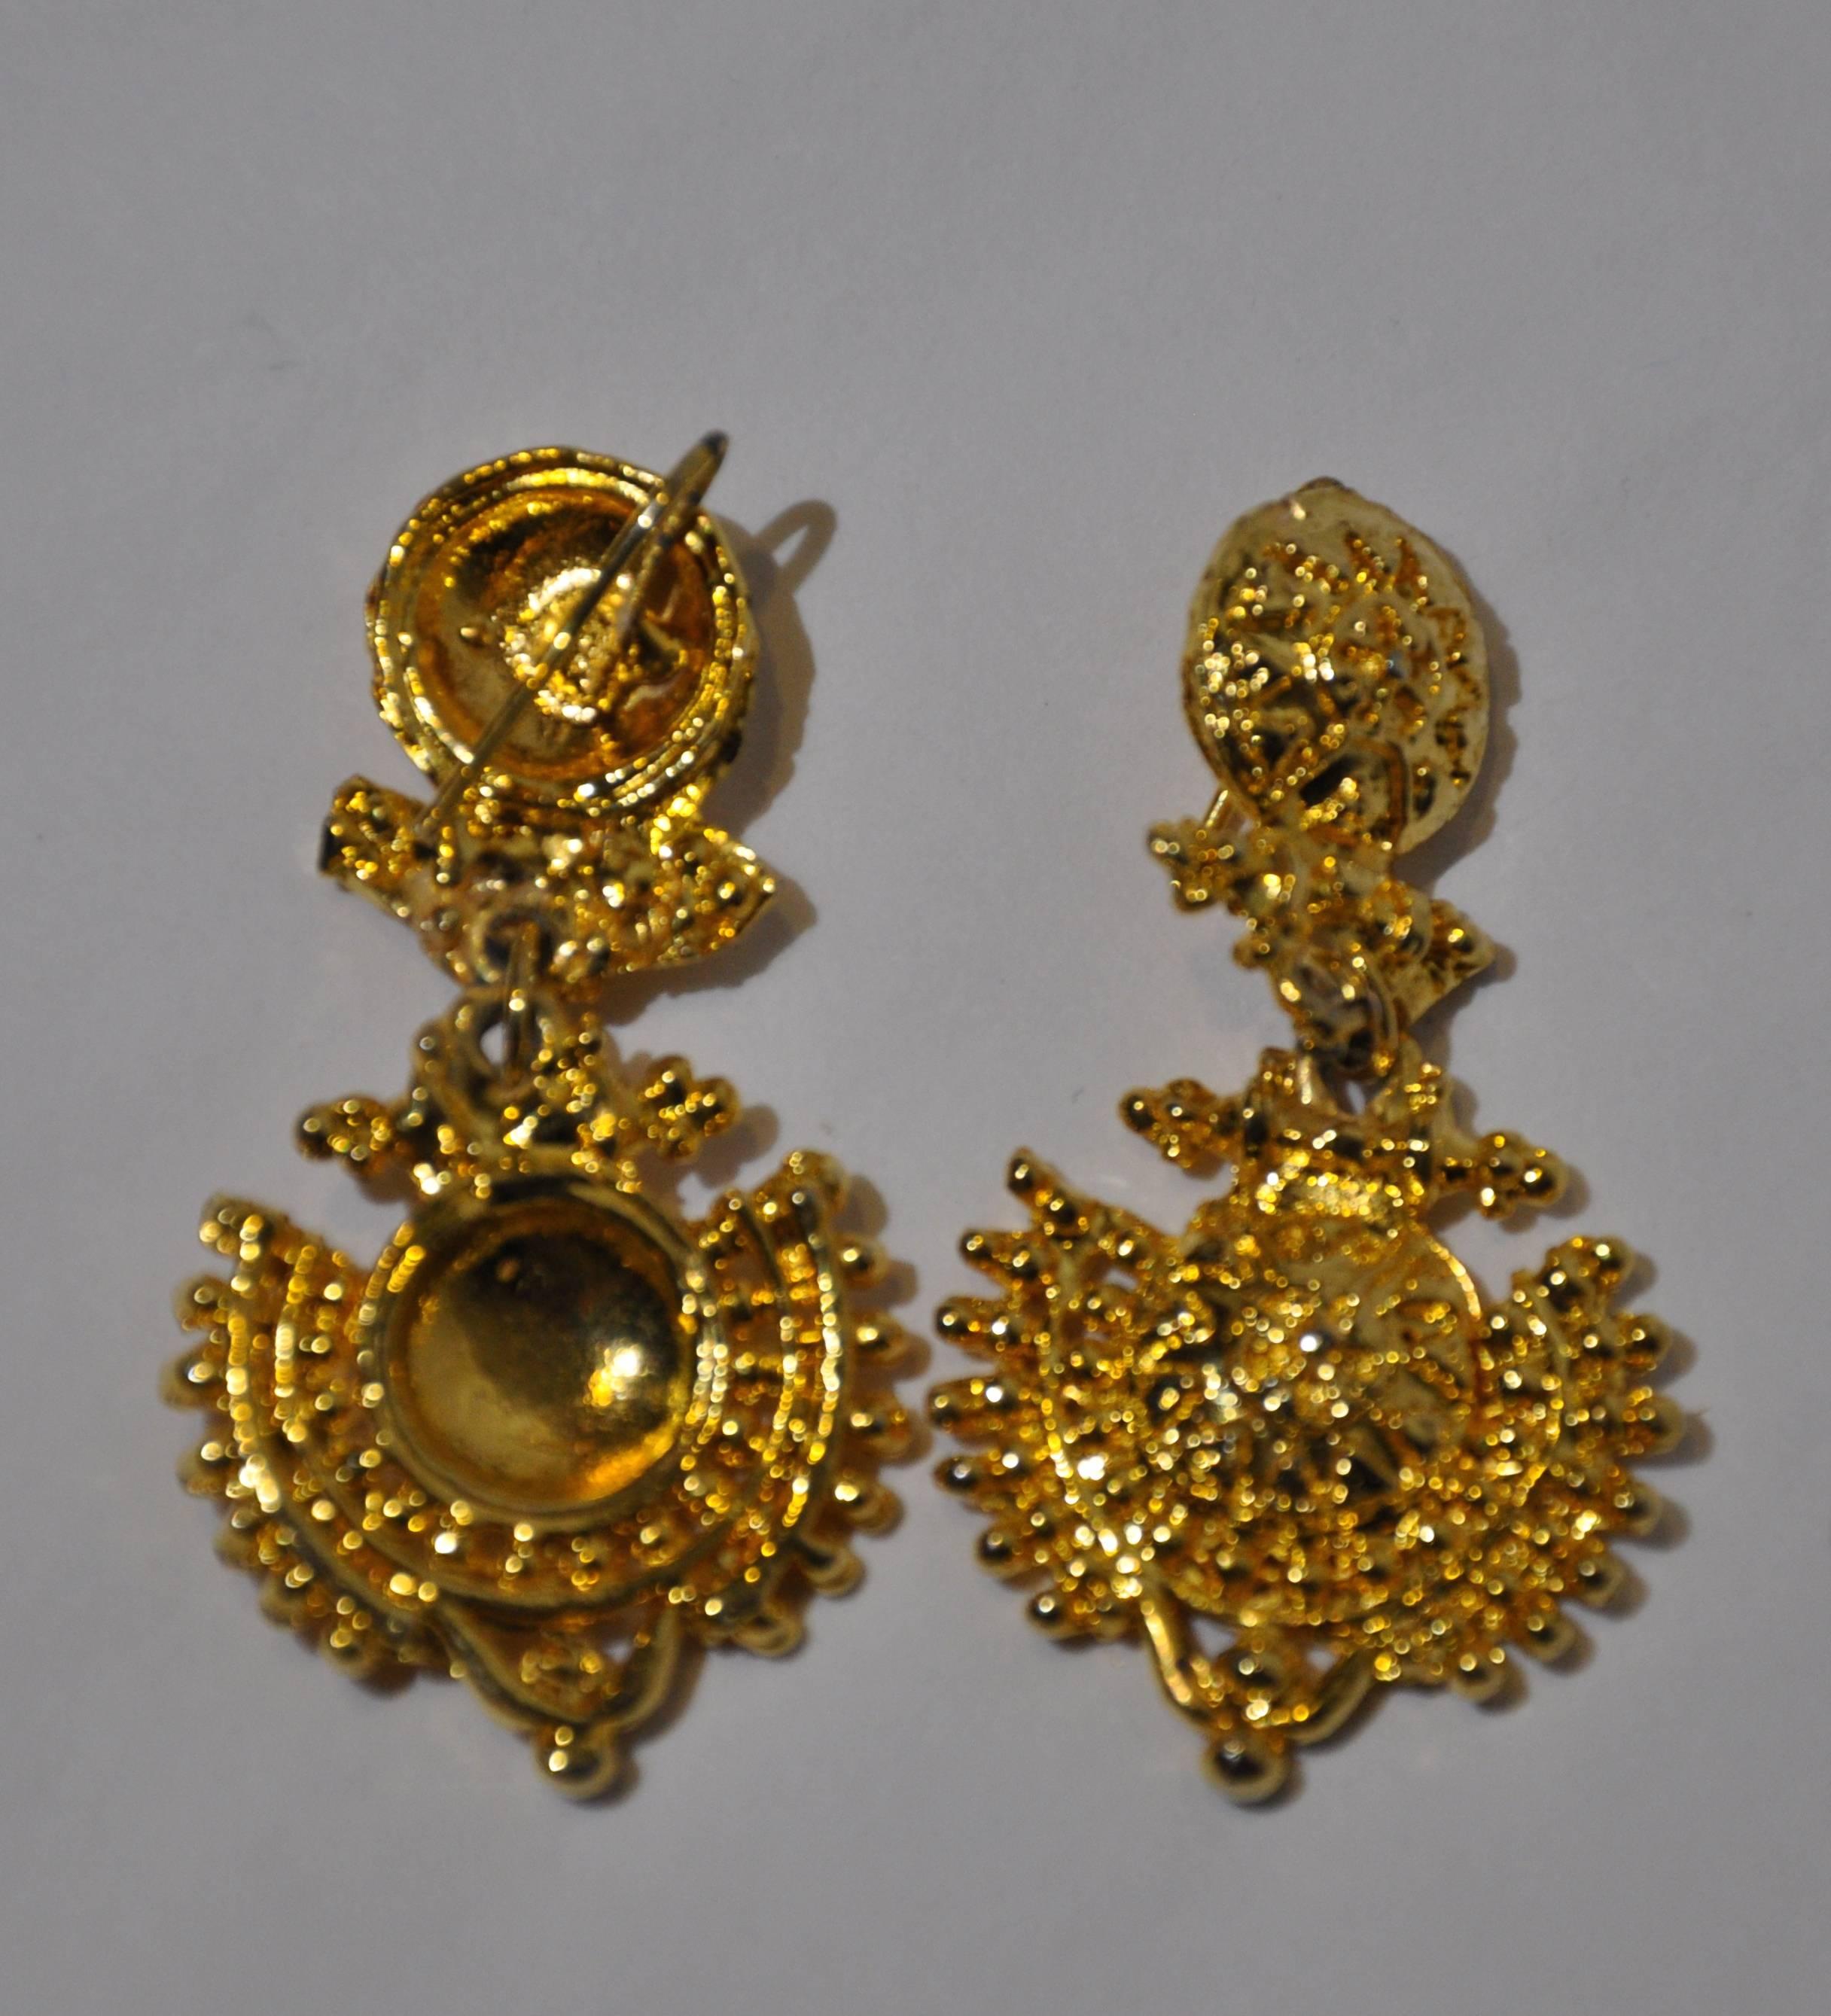          Diese wunderbar eleganten vergoldeten Goldbeschläge mit Vermeil-Finish sind mit gravierten Schnitzereien versehen und messen 2